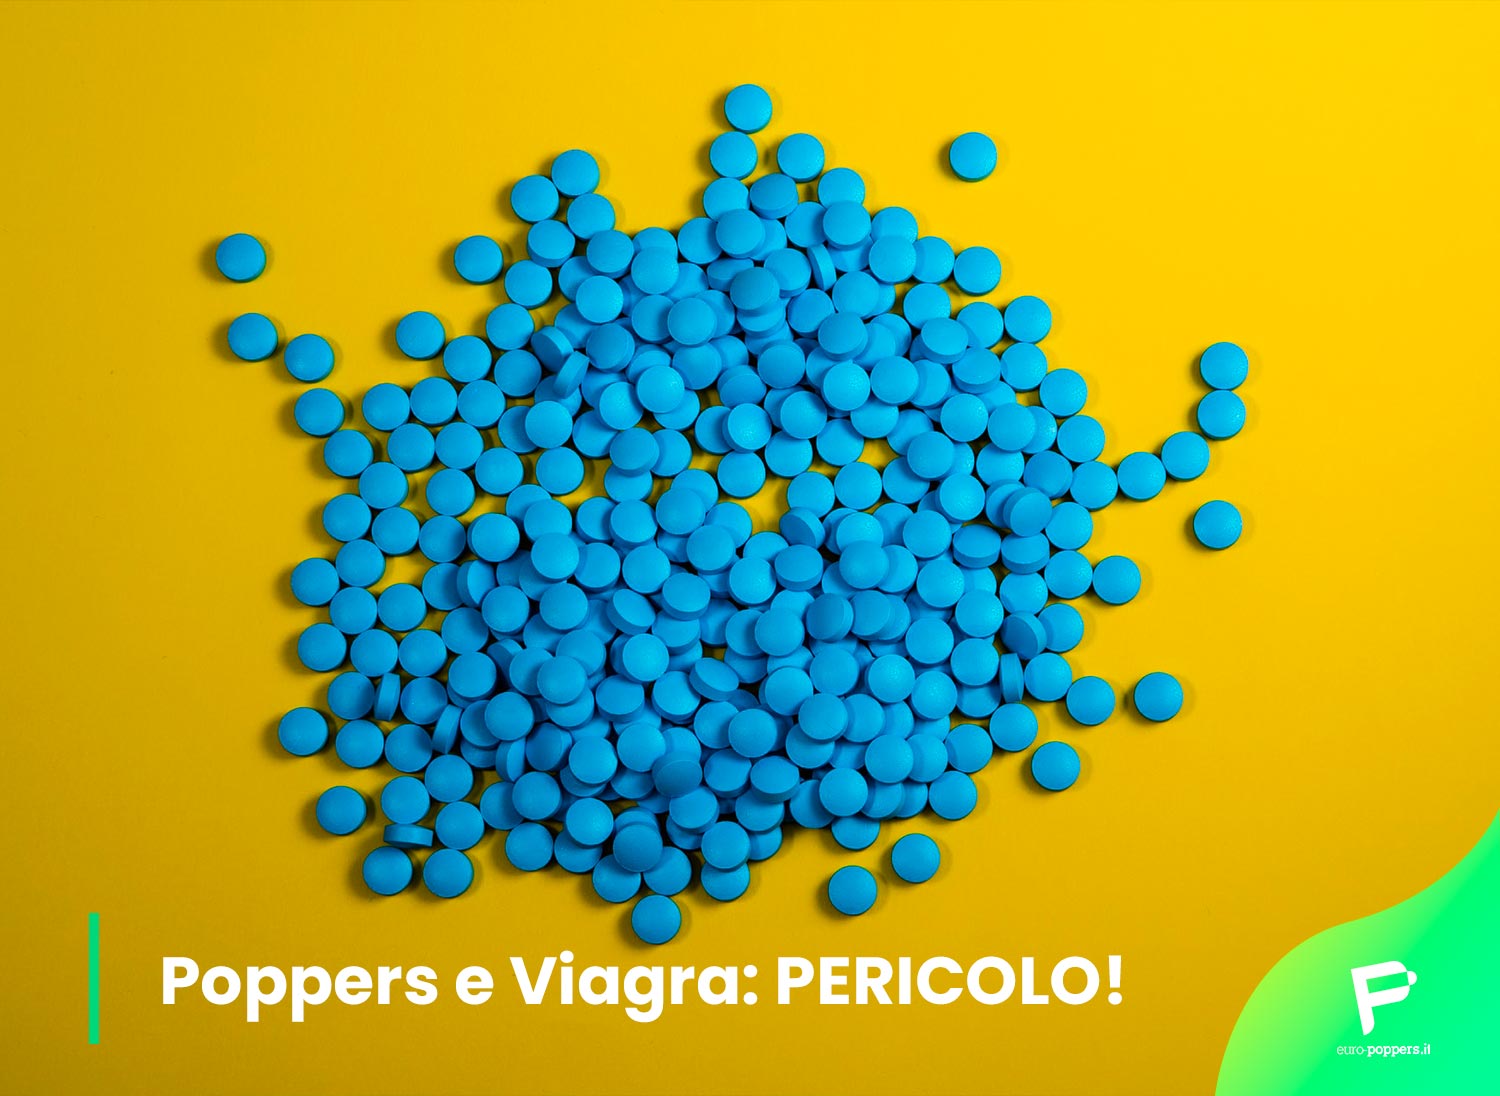 Al momento stai visualizzando Poppers e Viagra: PERICOLO!